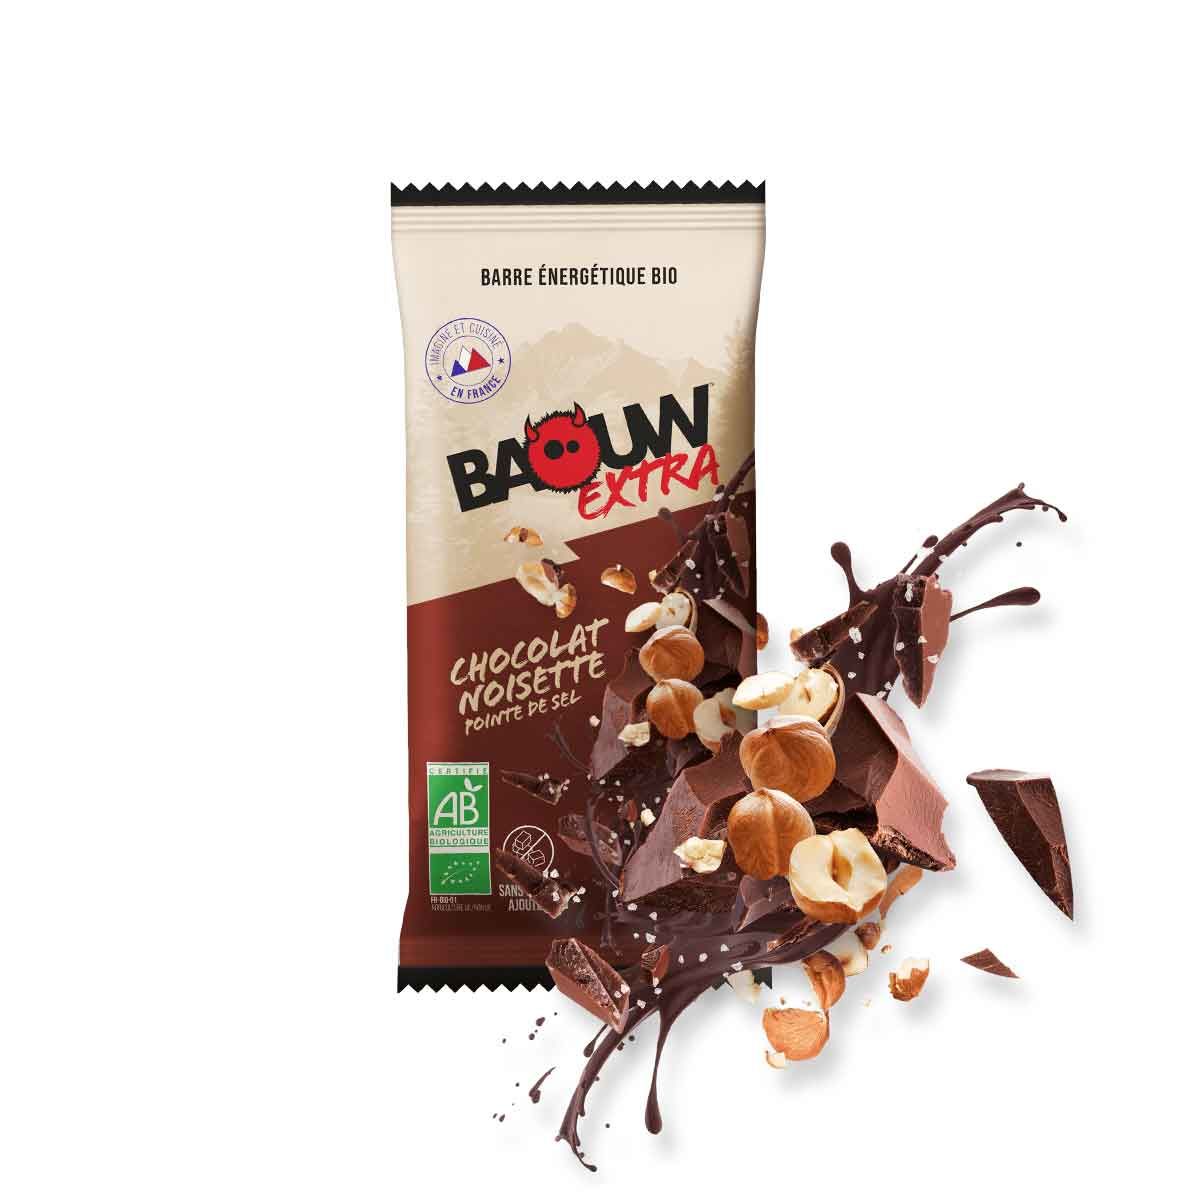 Barre énergétique bio Baouw Extra - Chocolat, noisette